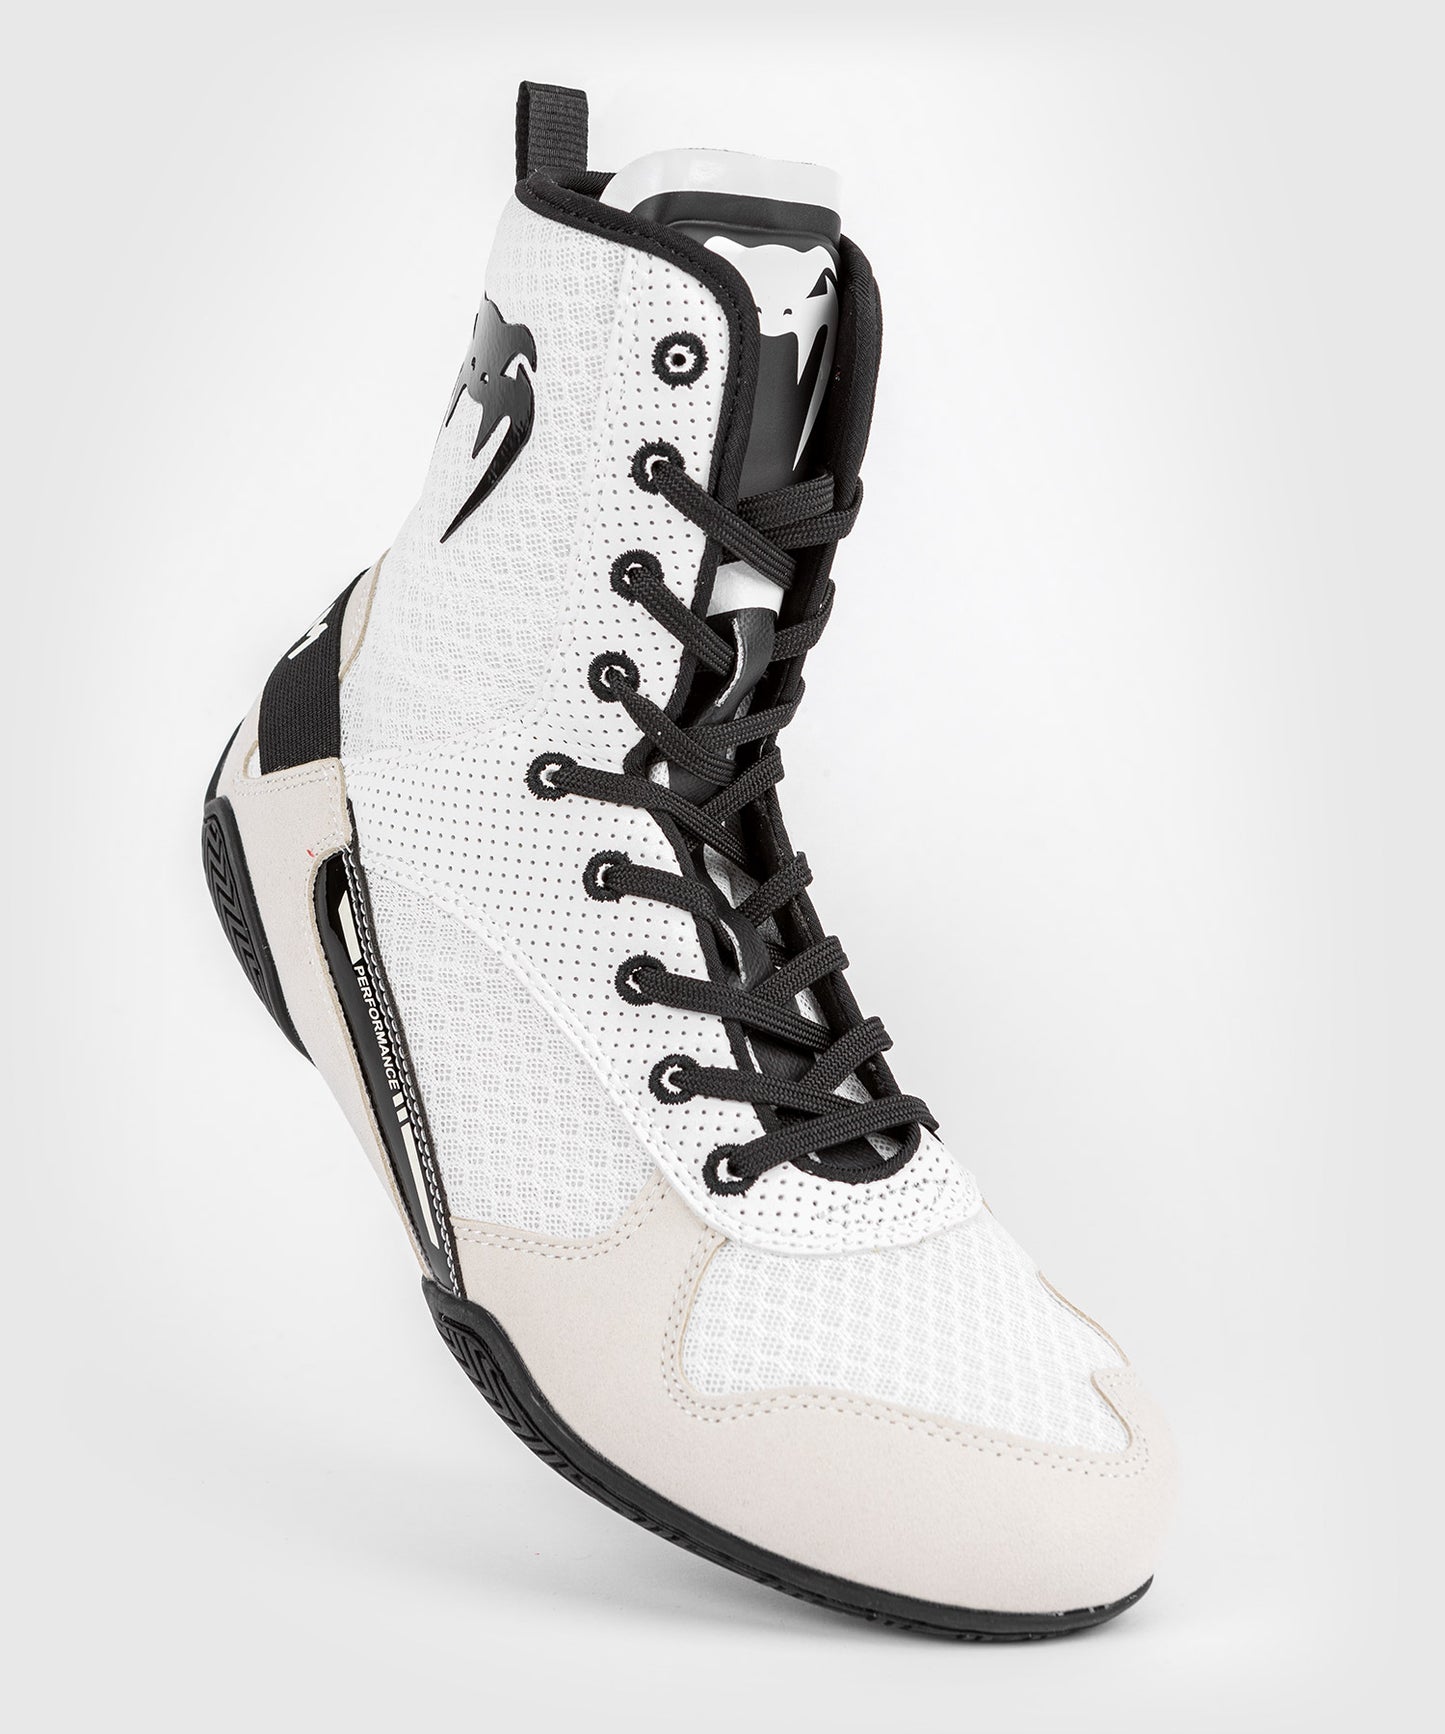 Chaussures De Boxe Venum Elite – Blanc/Noir